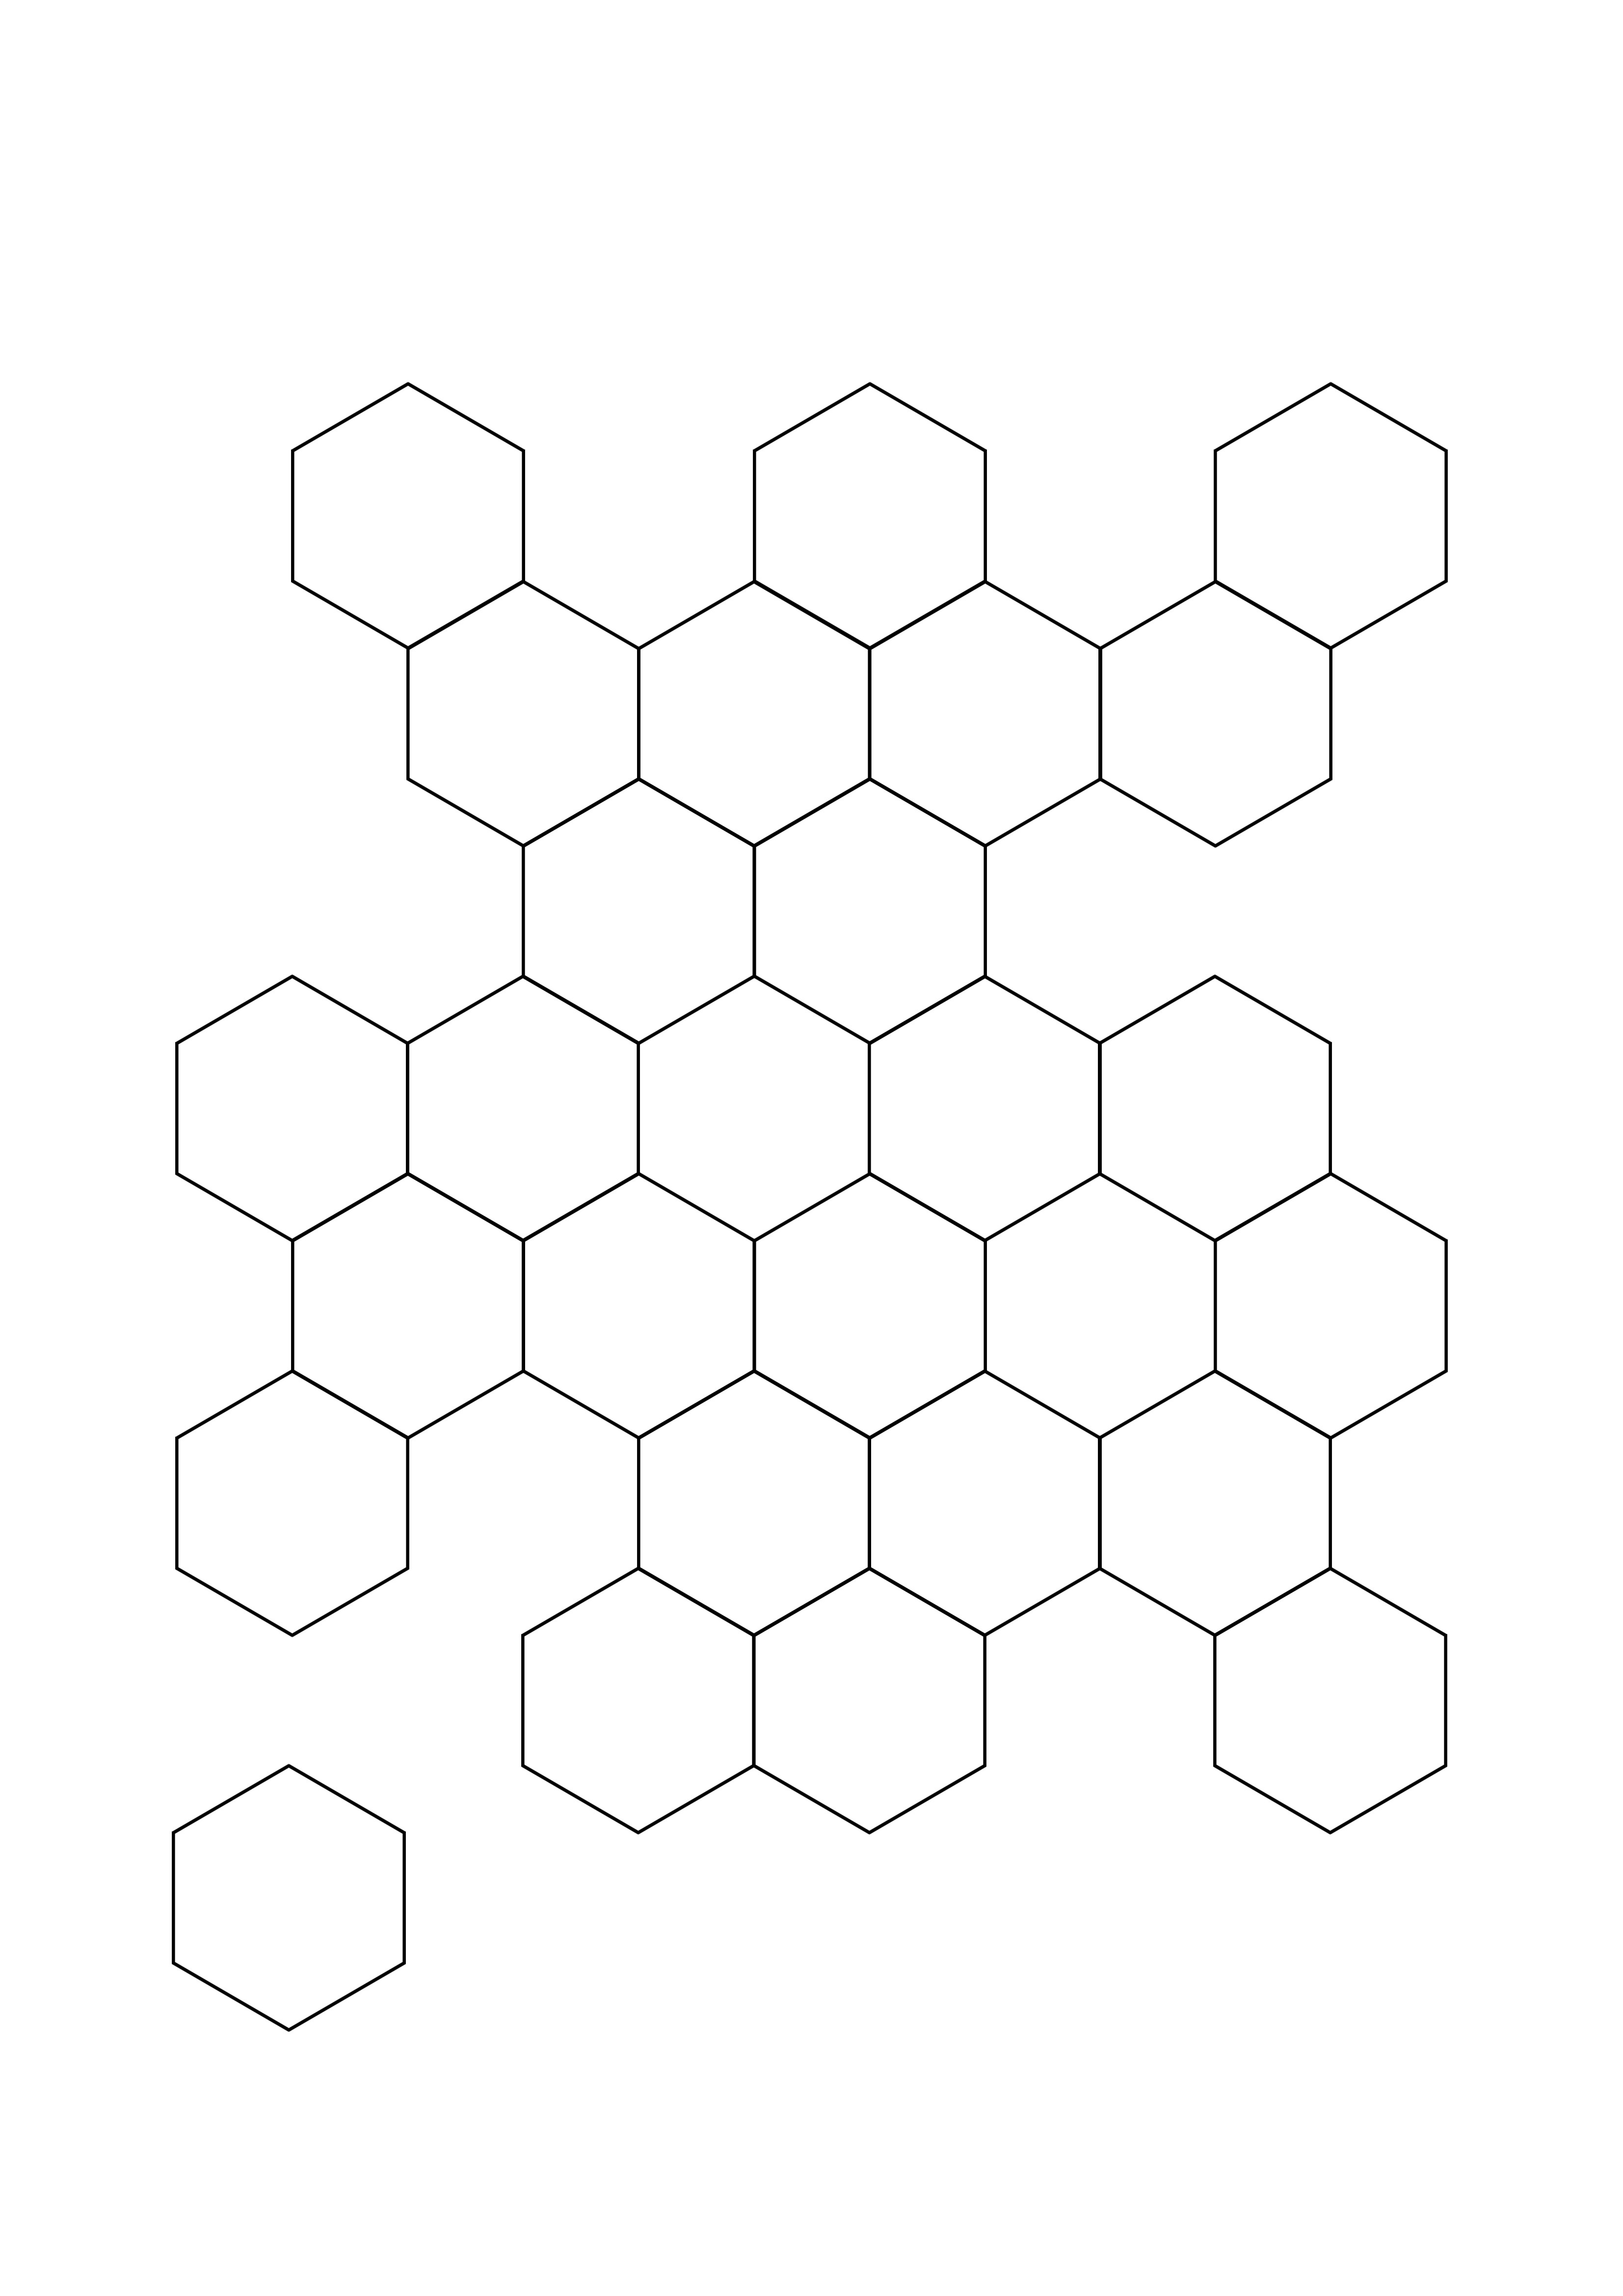 Hexagon Honeycomb Tessellation para imprimir ou baixar gratuitamente para a folha de cores